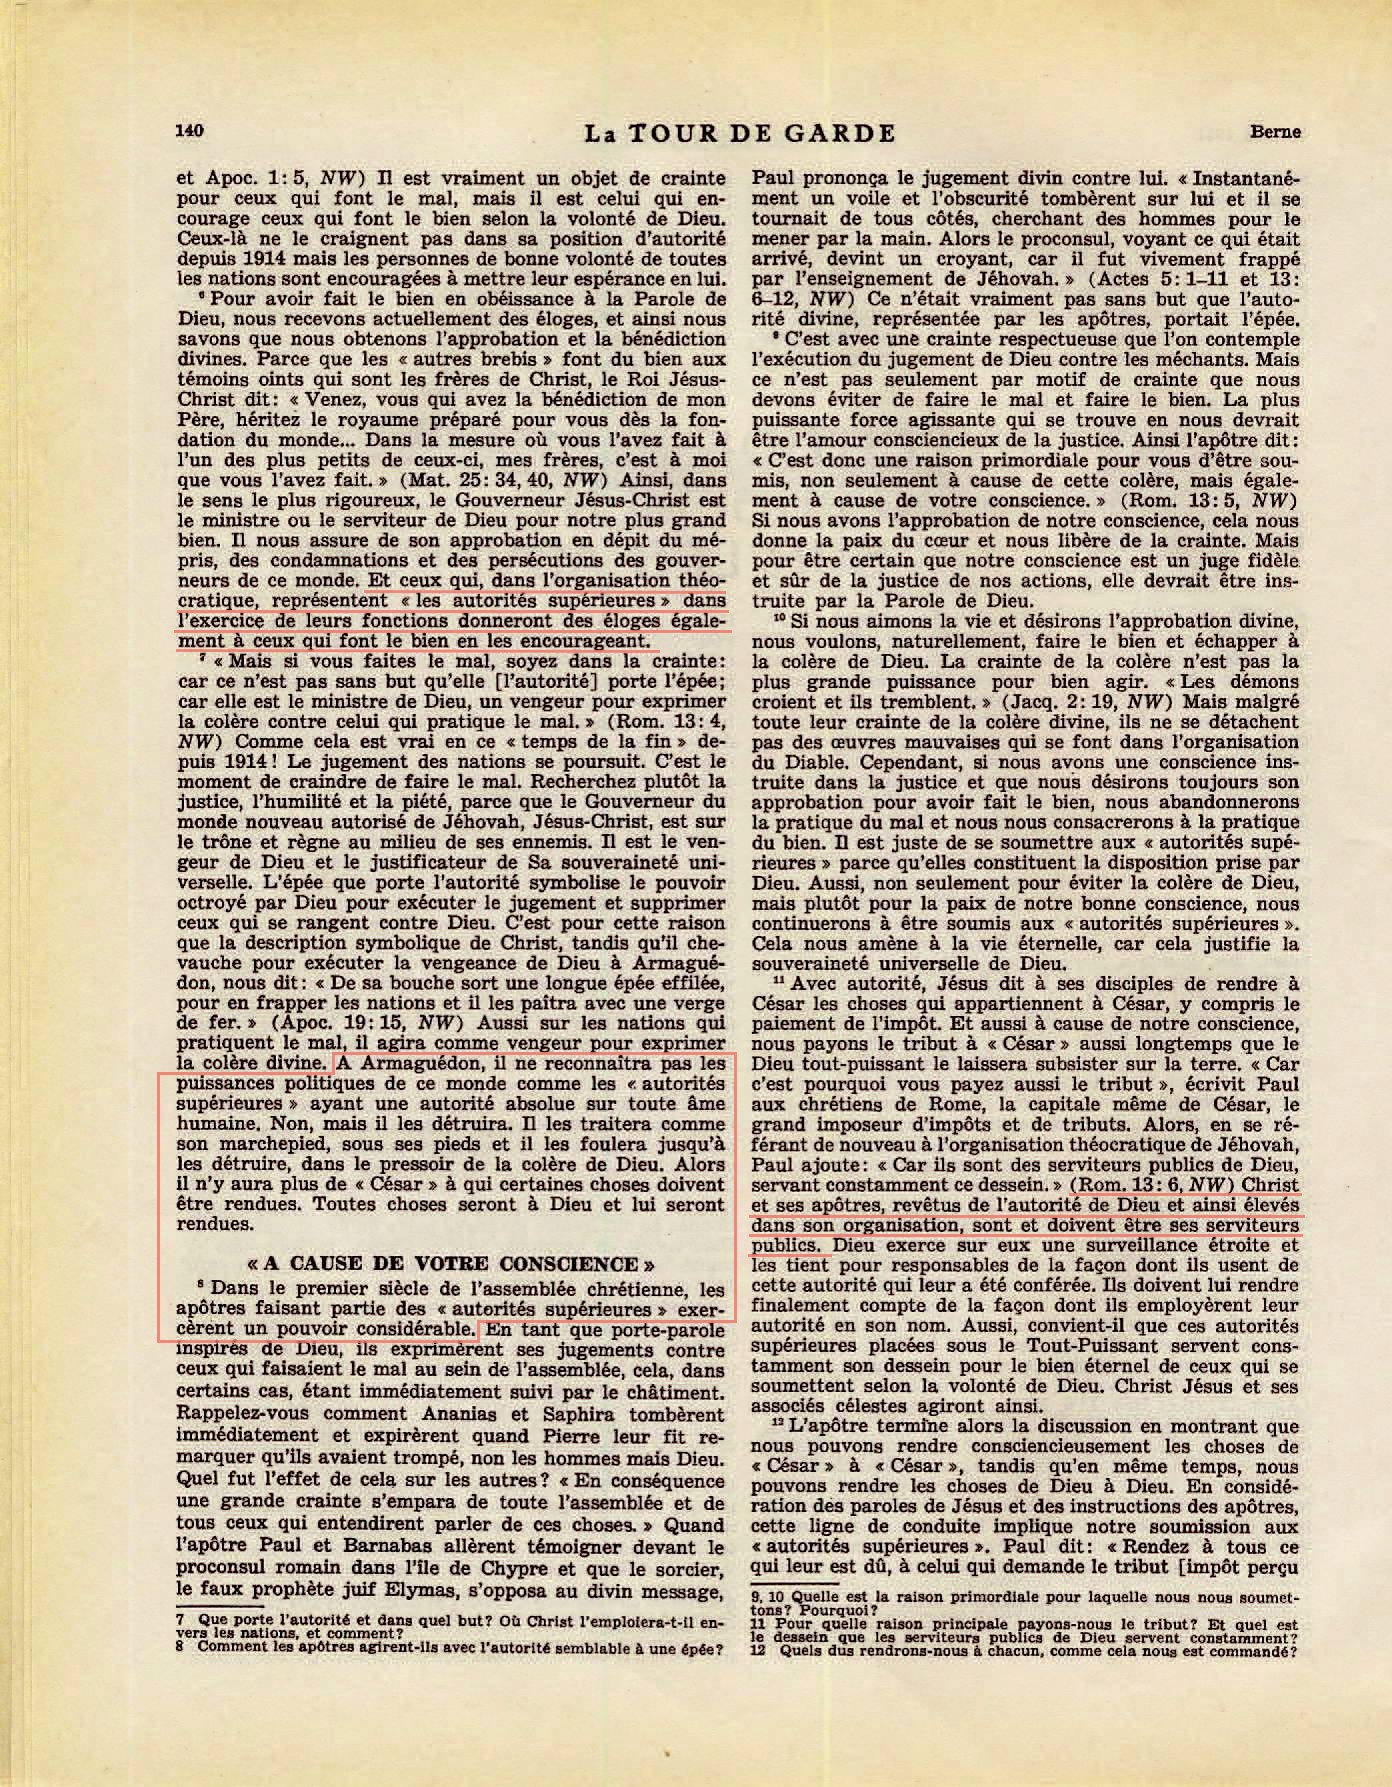 iLes autorités supérieures - Page 2 La-Tour-de-Garde-1-mai-1951-p140